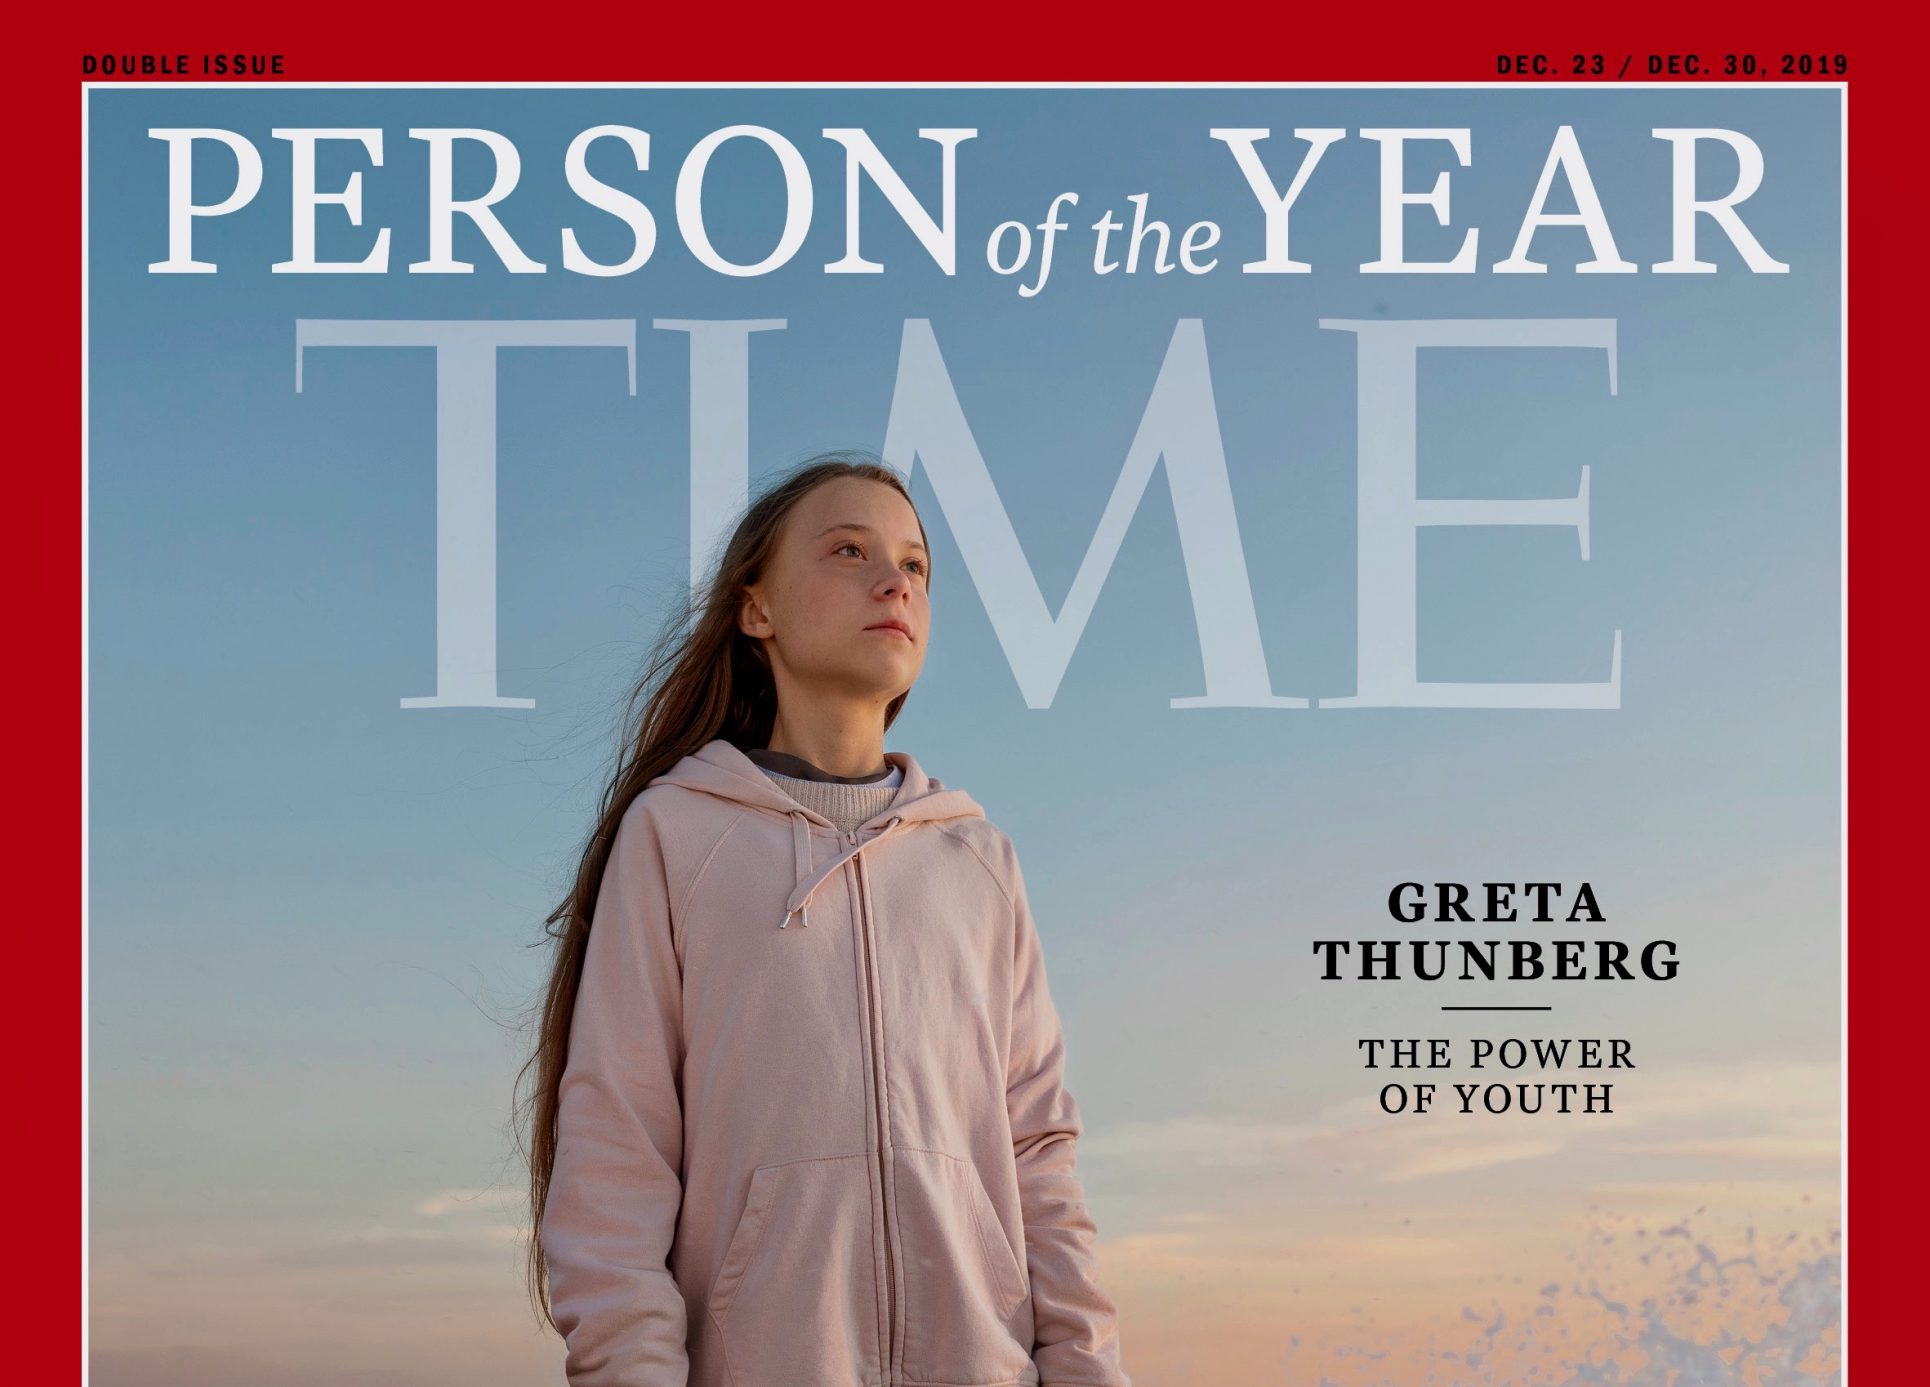 Revista Time nombra a la activista ambiental Greta Thunberg como personalidad del año